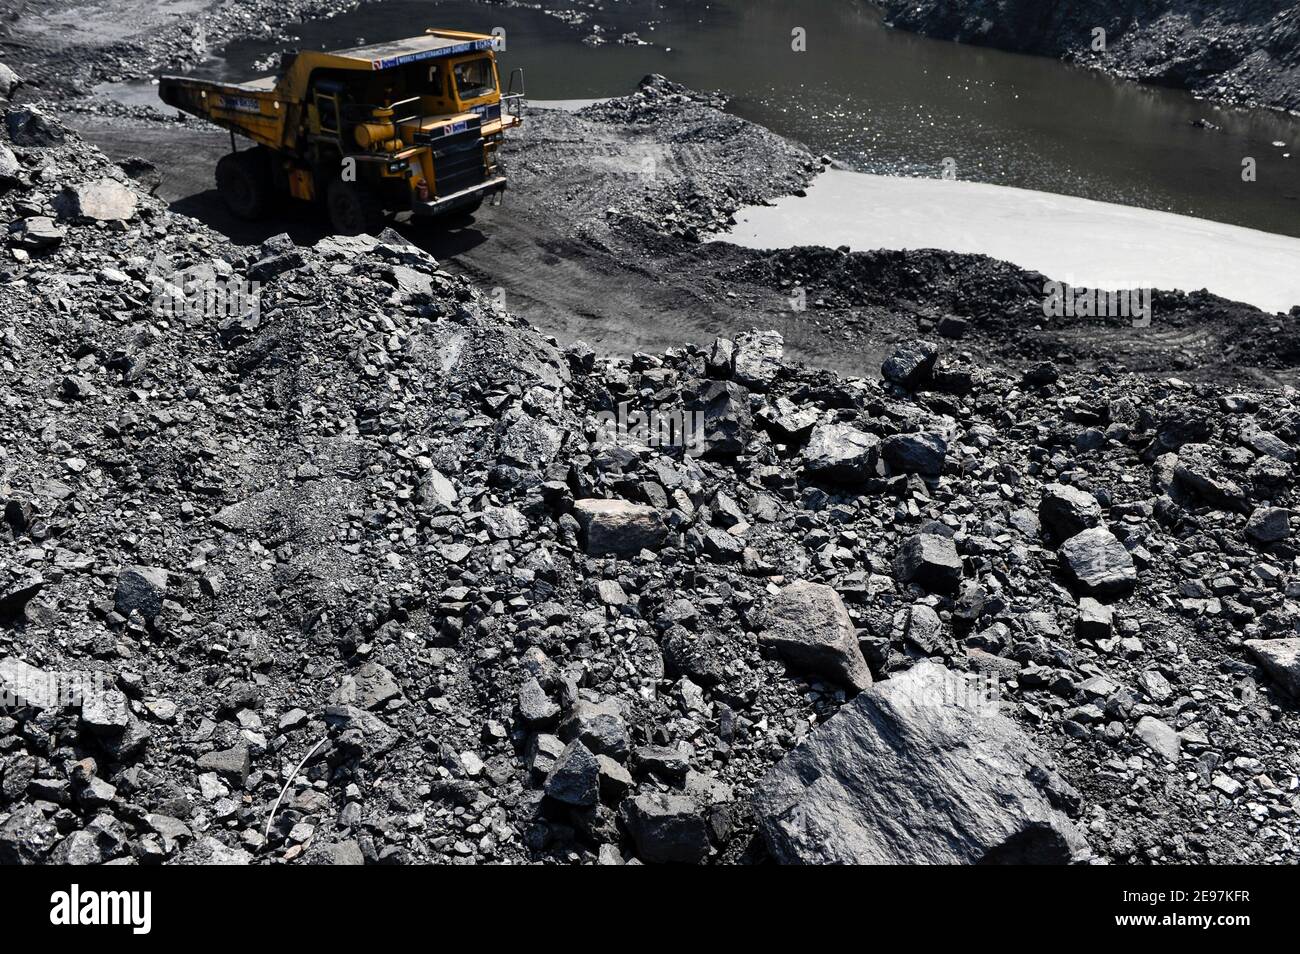 INDIEN Dhanbad, Tagebau von BCCL Ltd ein Unternehmen der KOHLE INDIEN, große BEML Dumper / INDIEN Dhanbad , offener Kohle Tagebau von BCCL Ltd. Ein Tochterunternehmen von Coal India Stockfoto